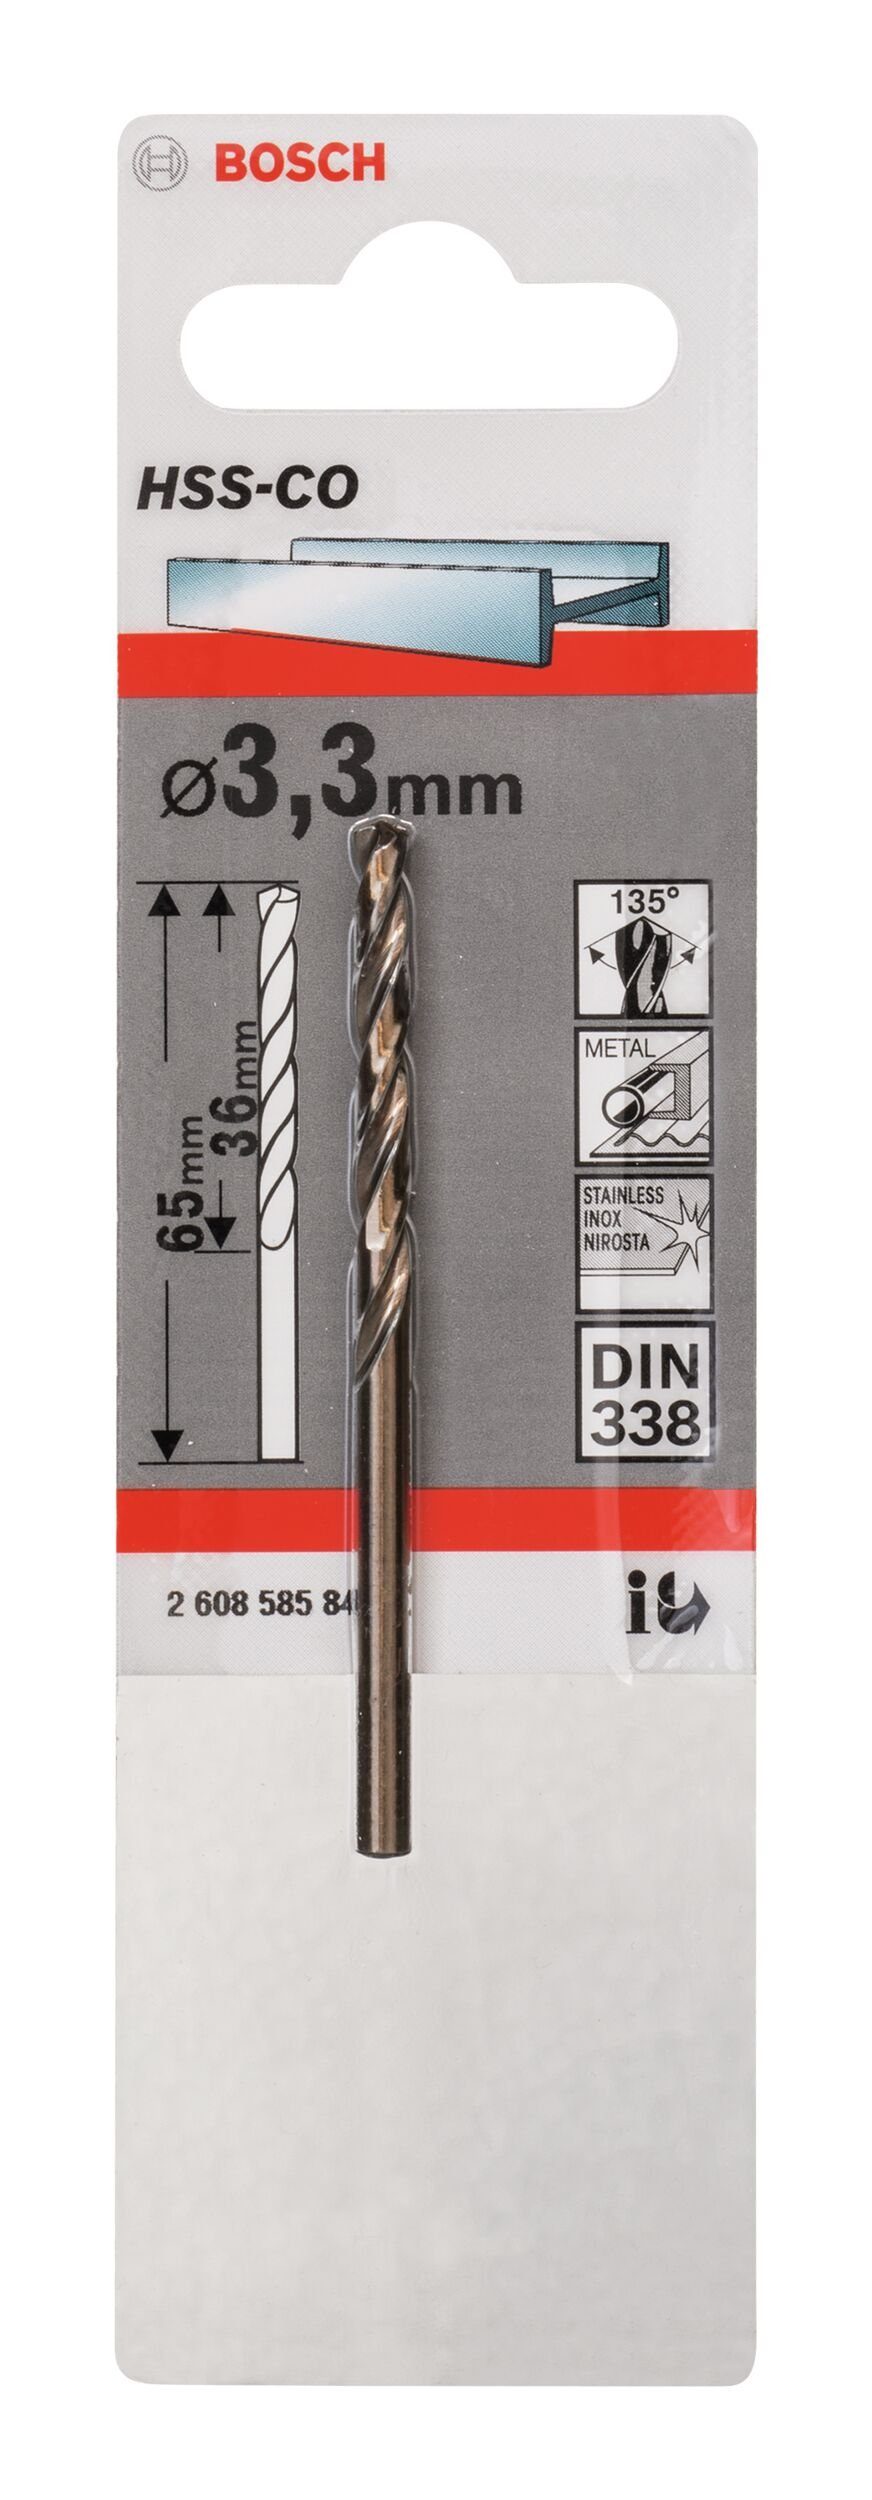 1er-Pack mm 36 338) Metallbohrer, 65 x BOSCH (DIN HSS-Co 3,3 - - x